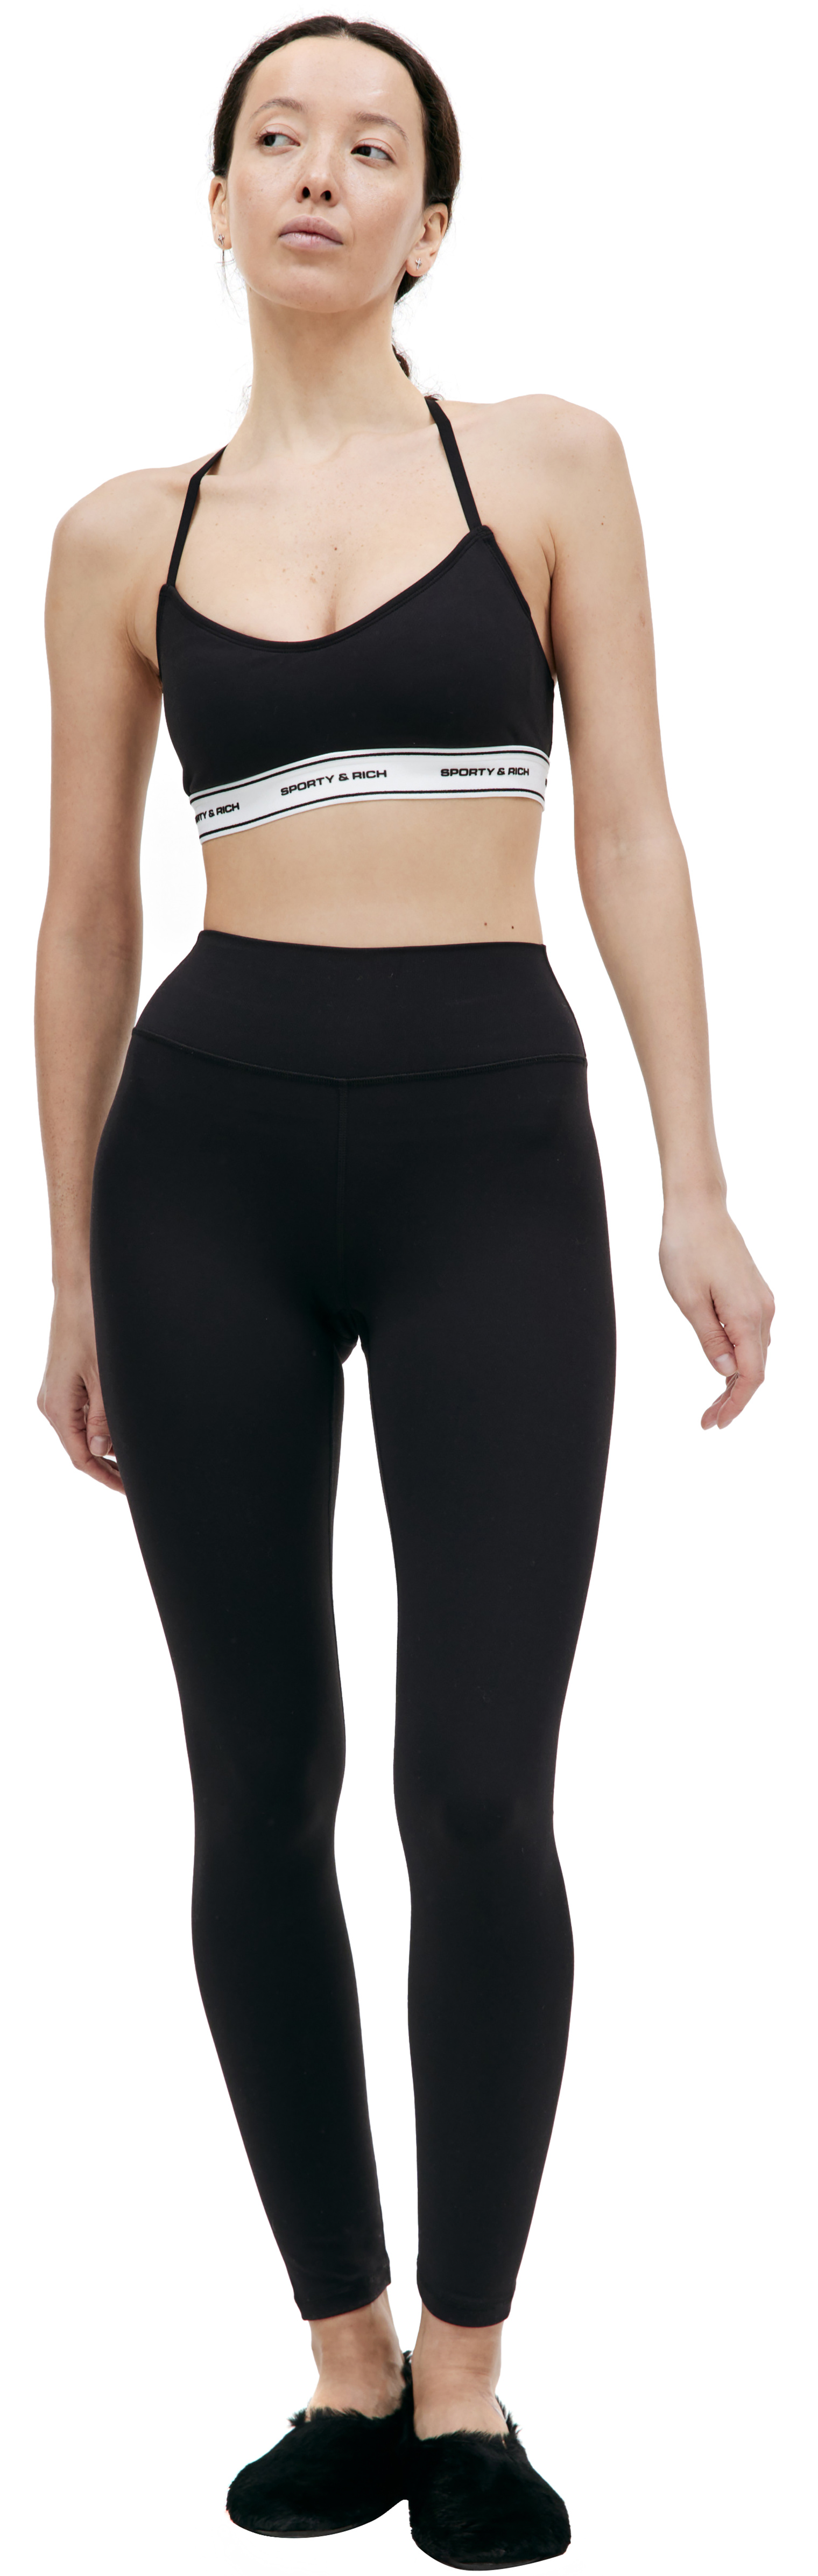 Buy SPORTY & RICH women black sr bold leggings for $153 online on SV77,  LEAW234BK